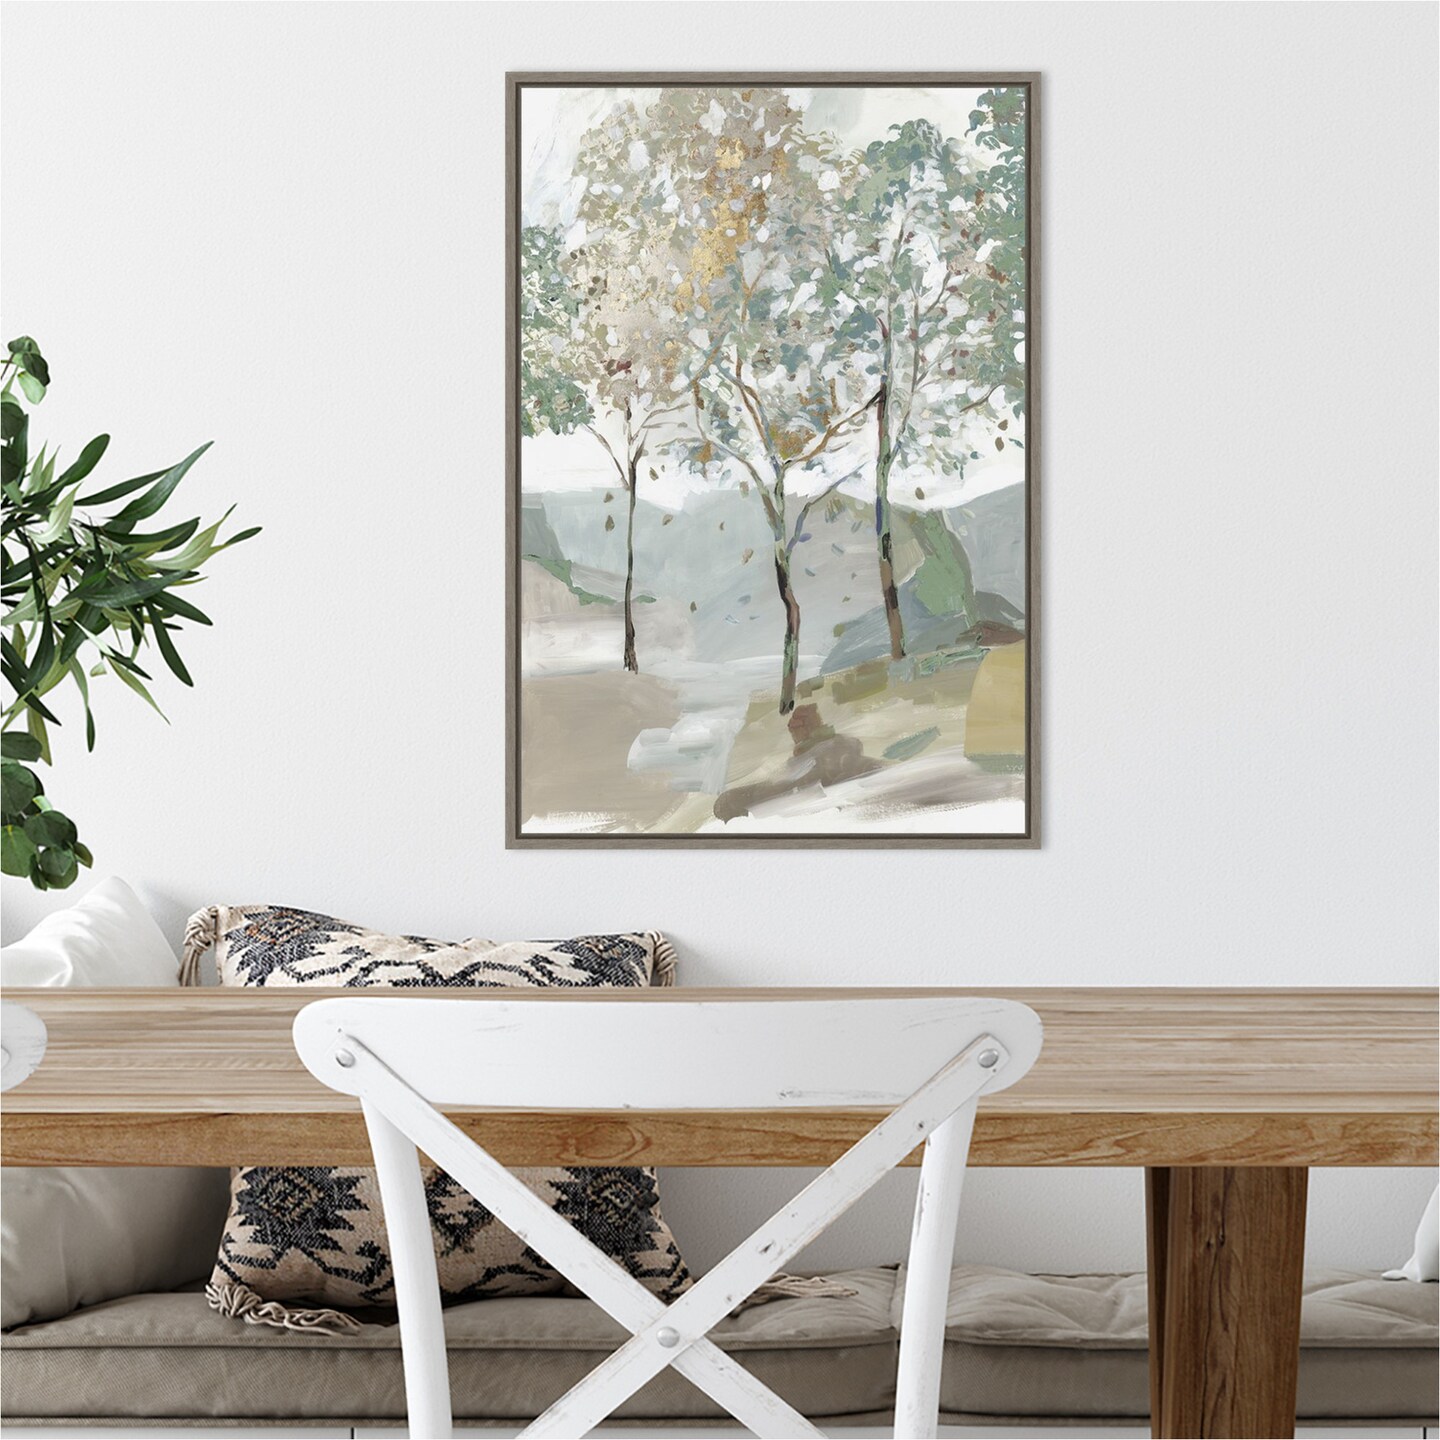 Breezy Landscape Trees II by Allison Pearce Canvas Wall Art Print Framed